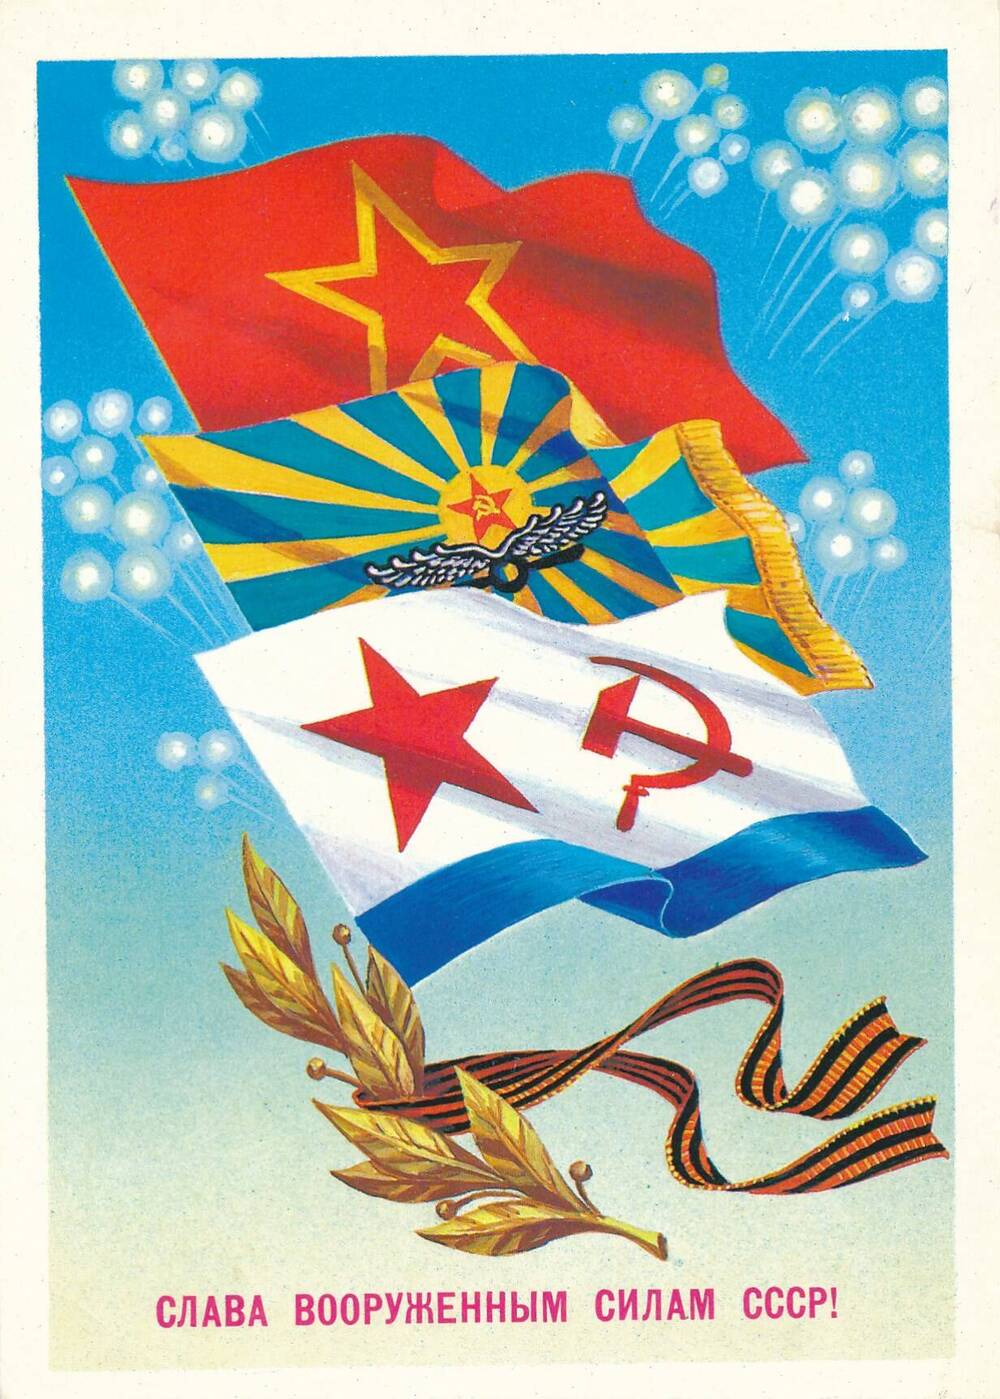 Слава Советской армии